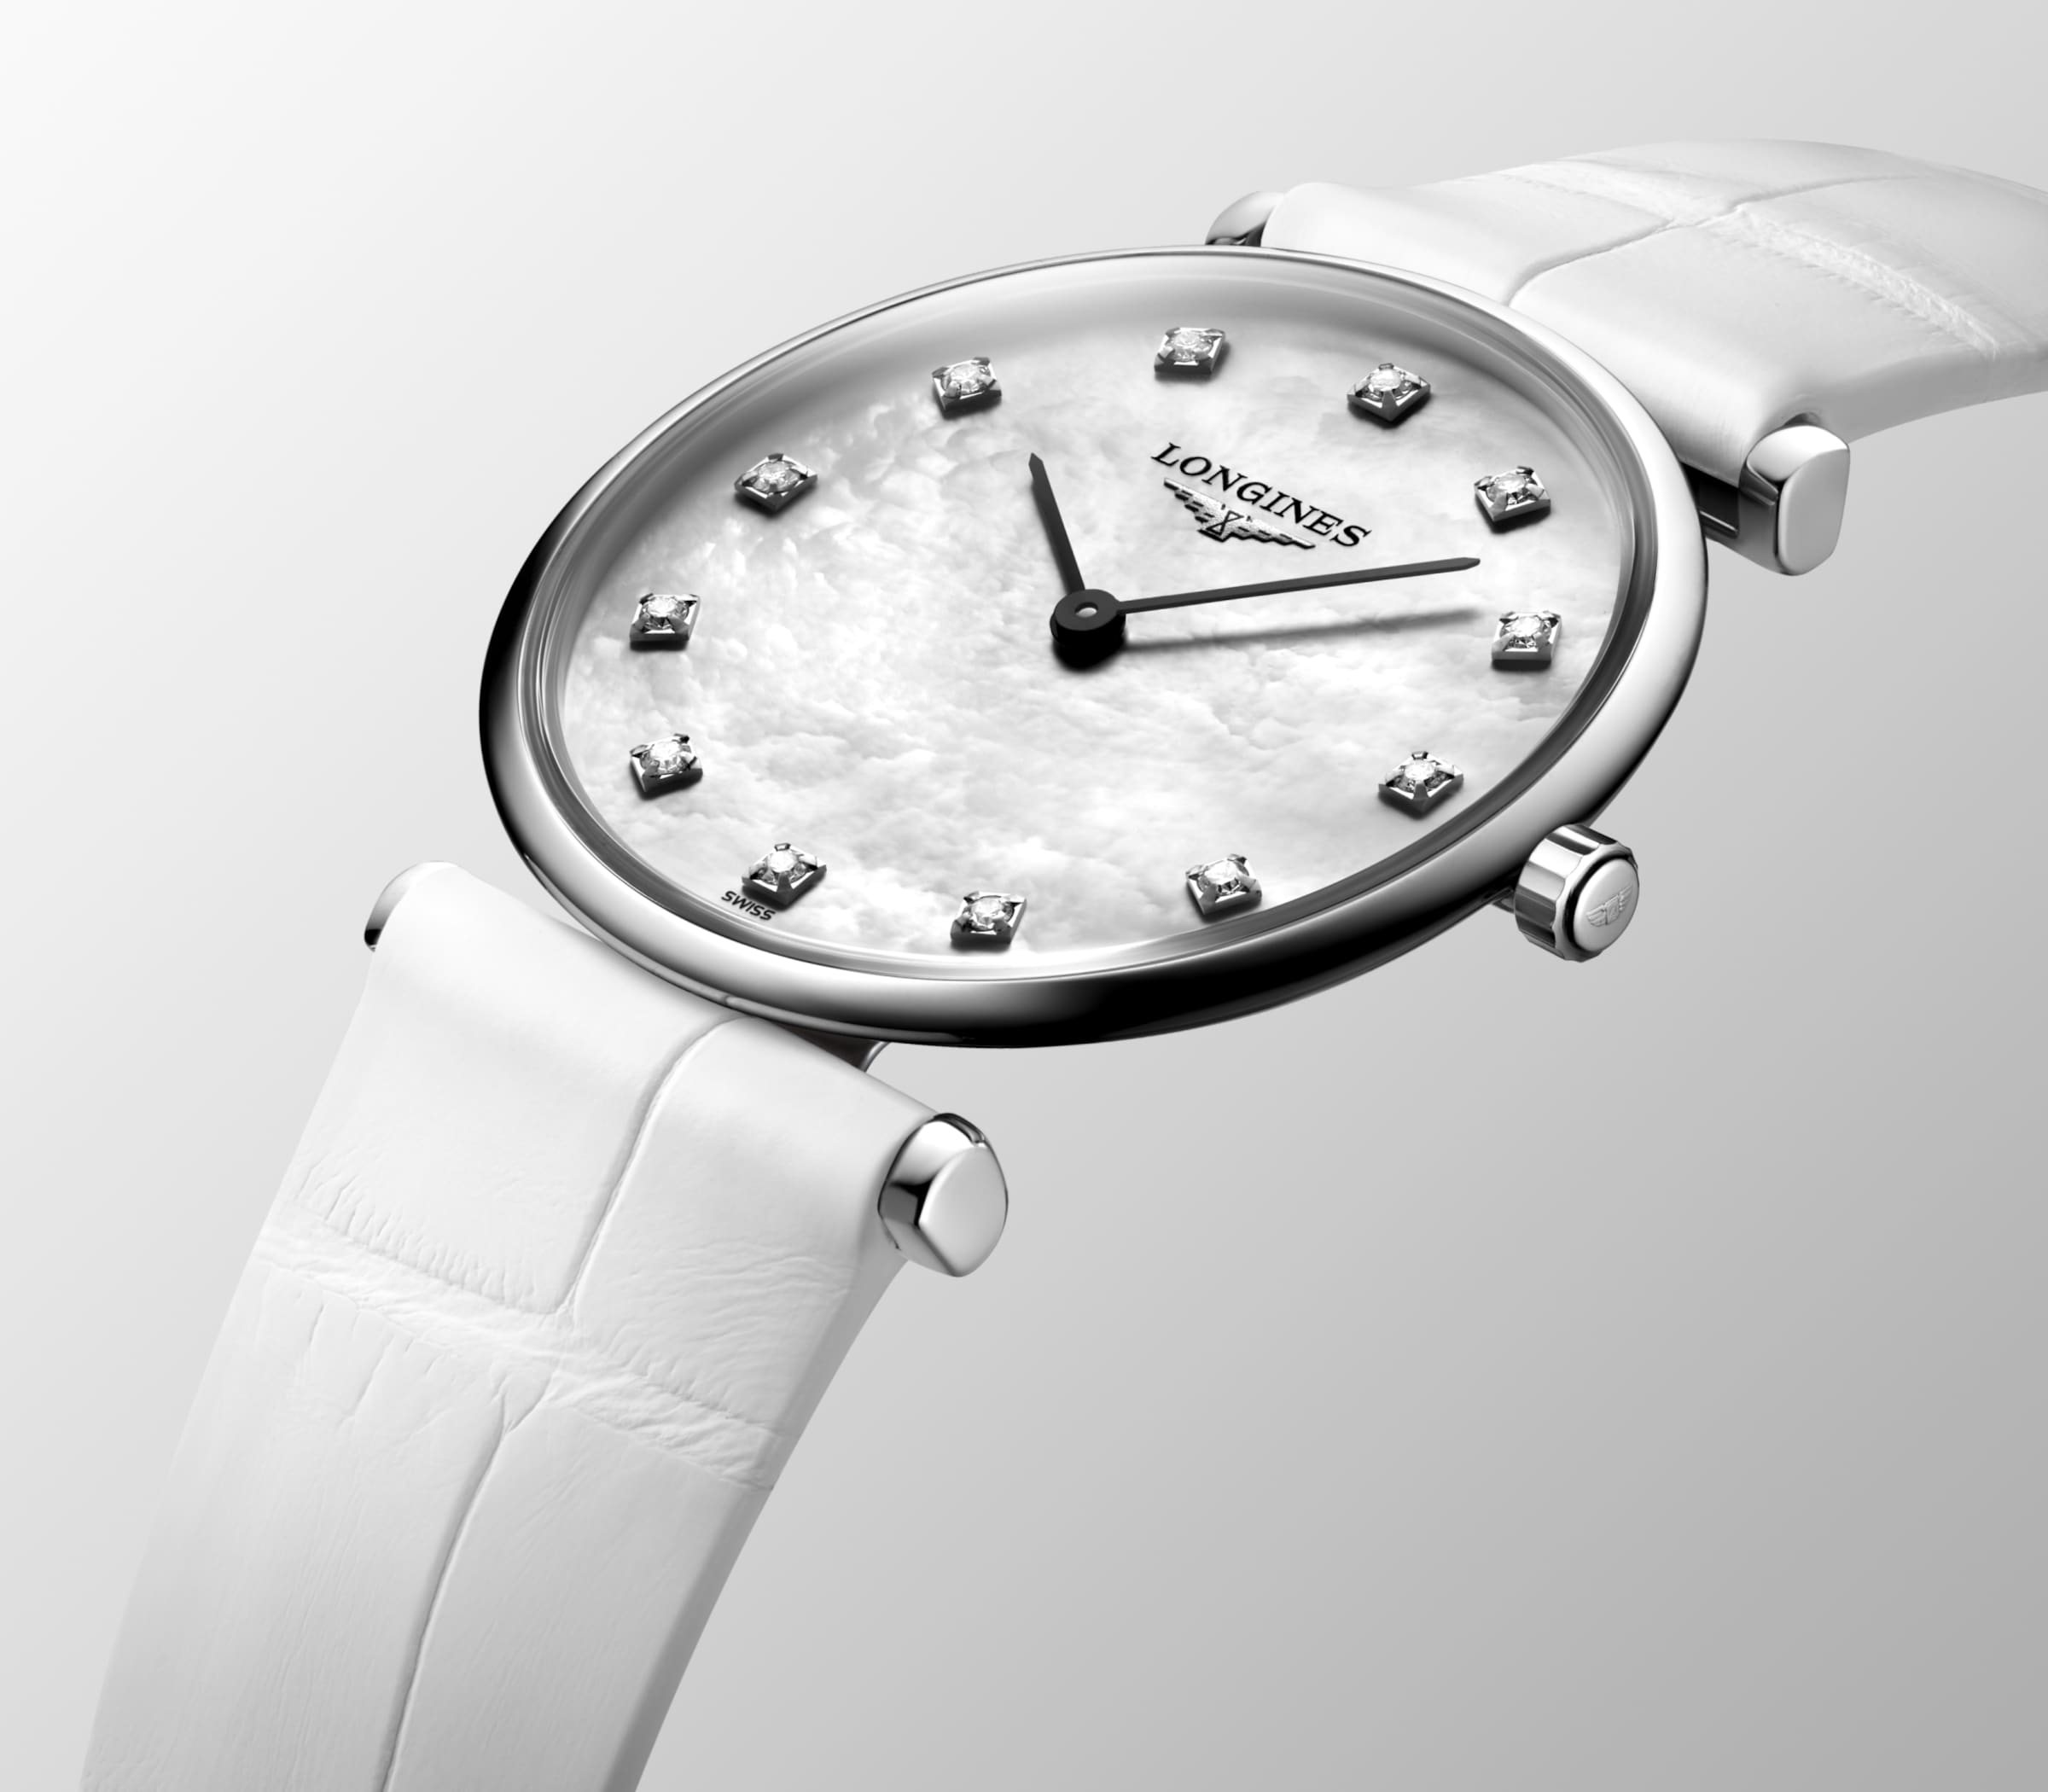 Longines LA GRANDE CLASSIQUE DE LONGINES Quartz Stainless steel Watch - L4.512.4.87.0